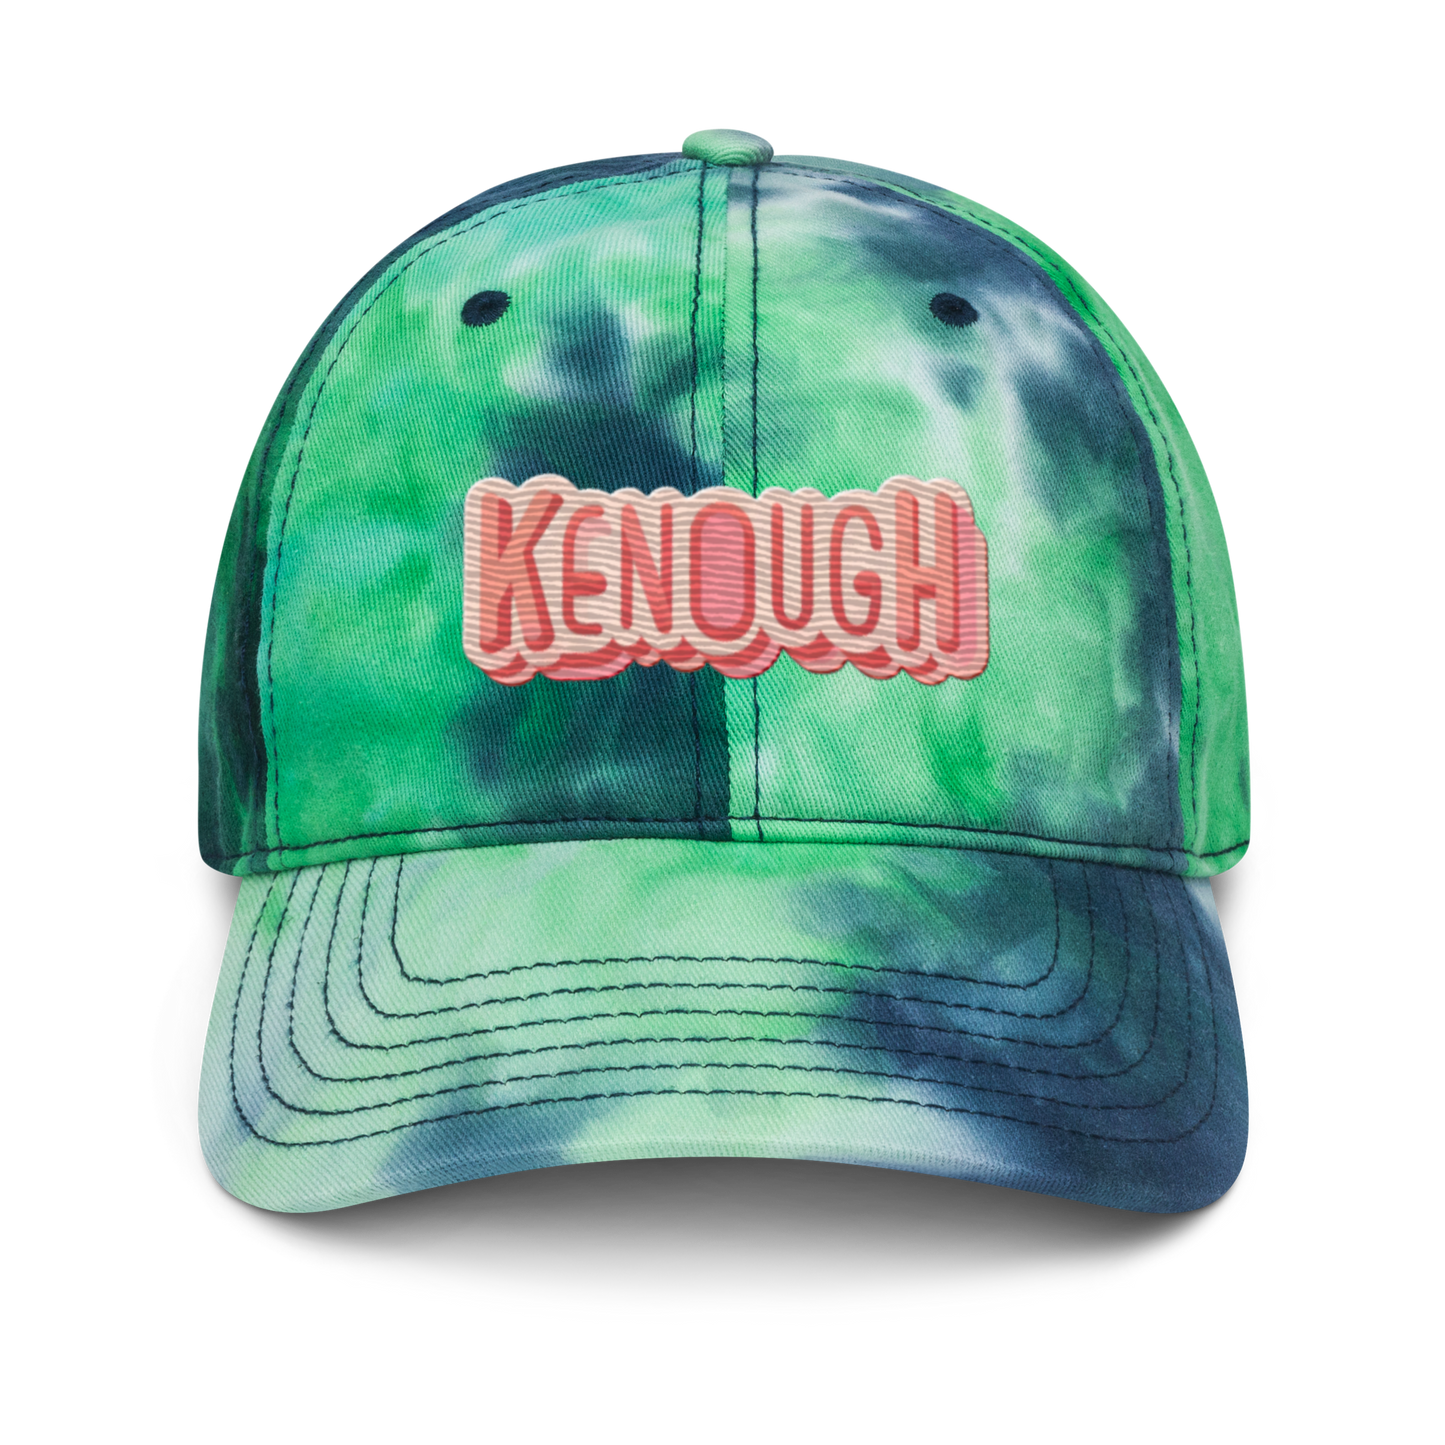 Kenough - Tie dye hat